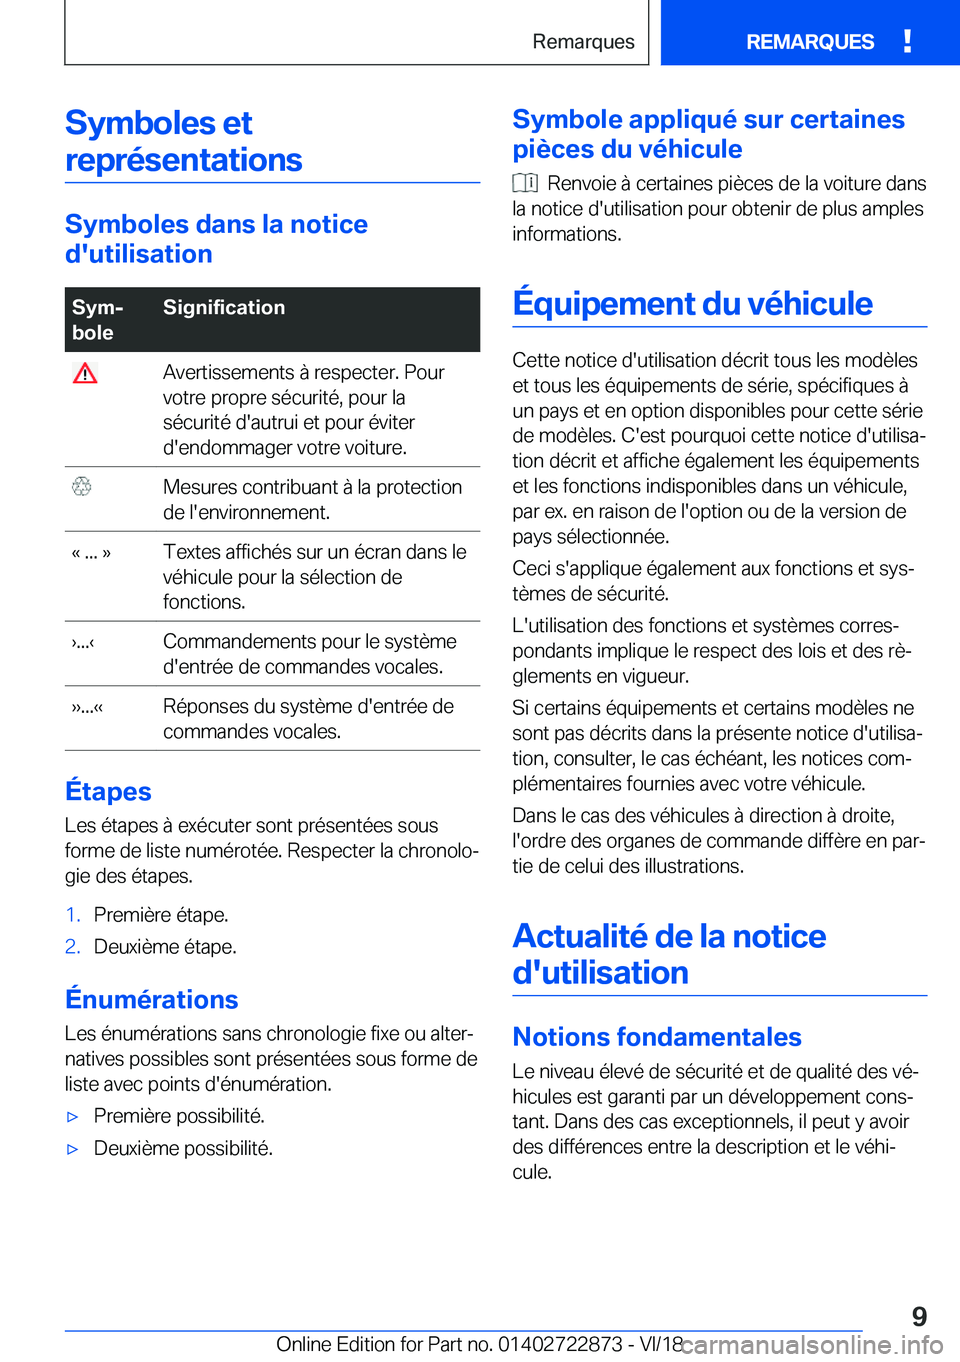 BMW X6 M 2019  Notices Demploi (in French) �S�y�m�b�o�l�e�s��e�t�r�e�p�r�é�s�e�n�t�a�t�i�o�n�s
�S�y�m�b�o�l�e�s��d�a�n�s��l�a��n�o�t�i�c�e
�d�'�u�t�i�l�i�s�a�t�i�o�n
�S�y�mj
�b�o�l�e�S�i�g�n�i�f�i�c�a�t�i�o�n��A�v�e�r�t�i�s�s�e�m�e�